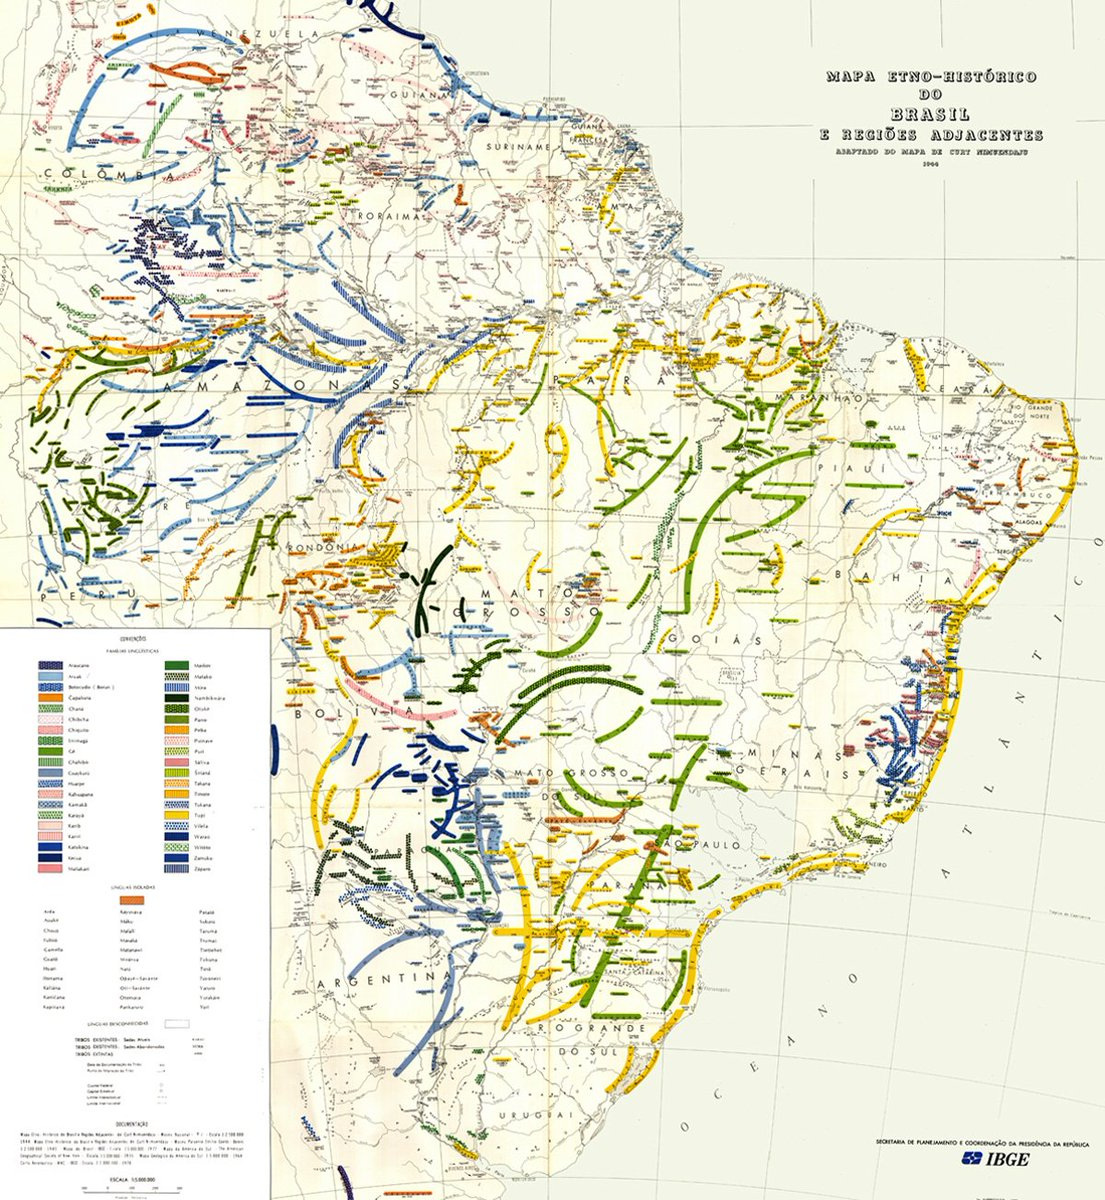 Brazília és a környező országok etnografikus térképe, 1946